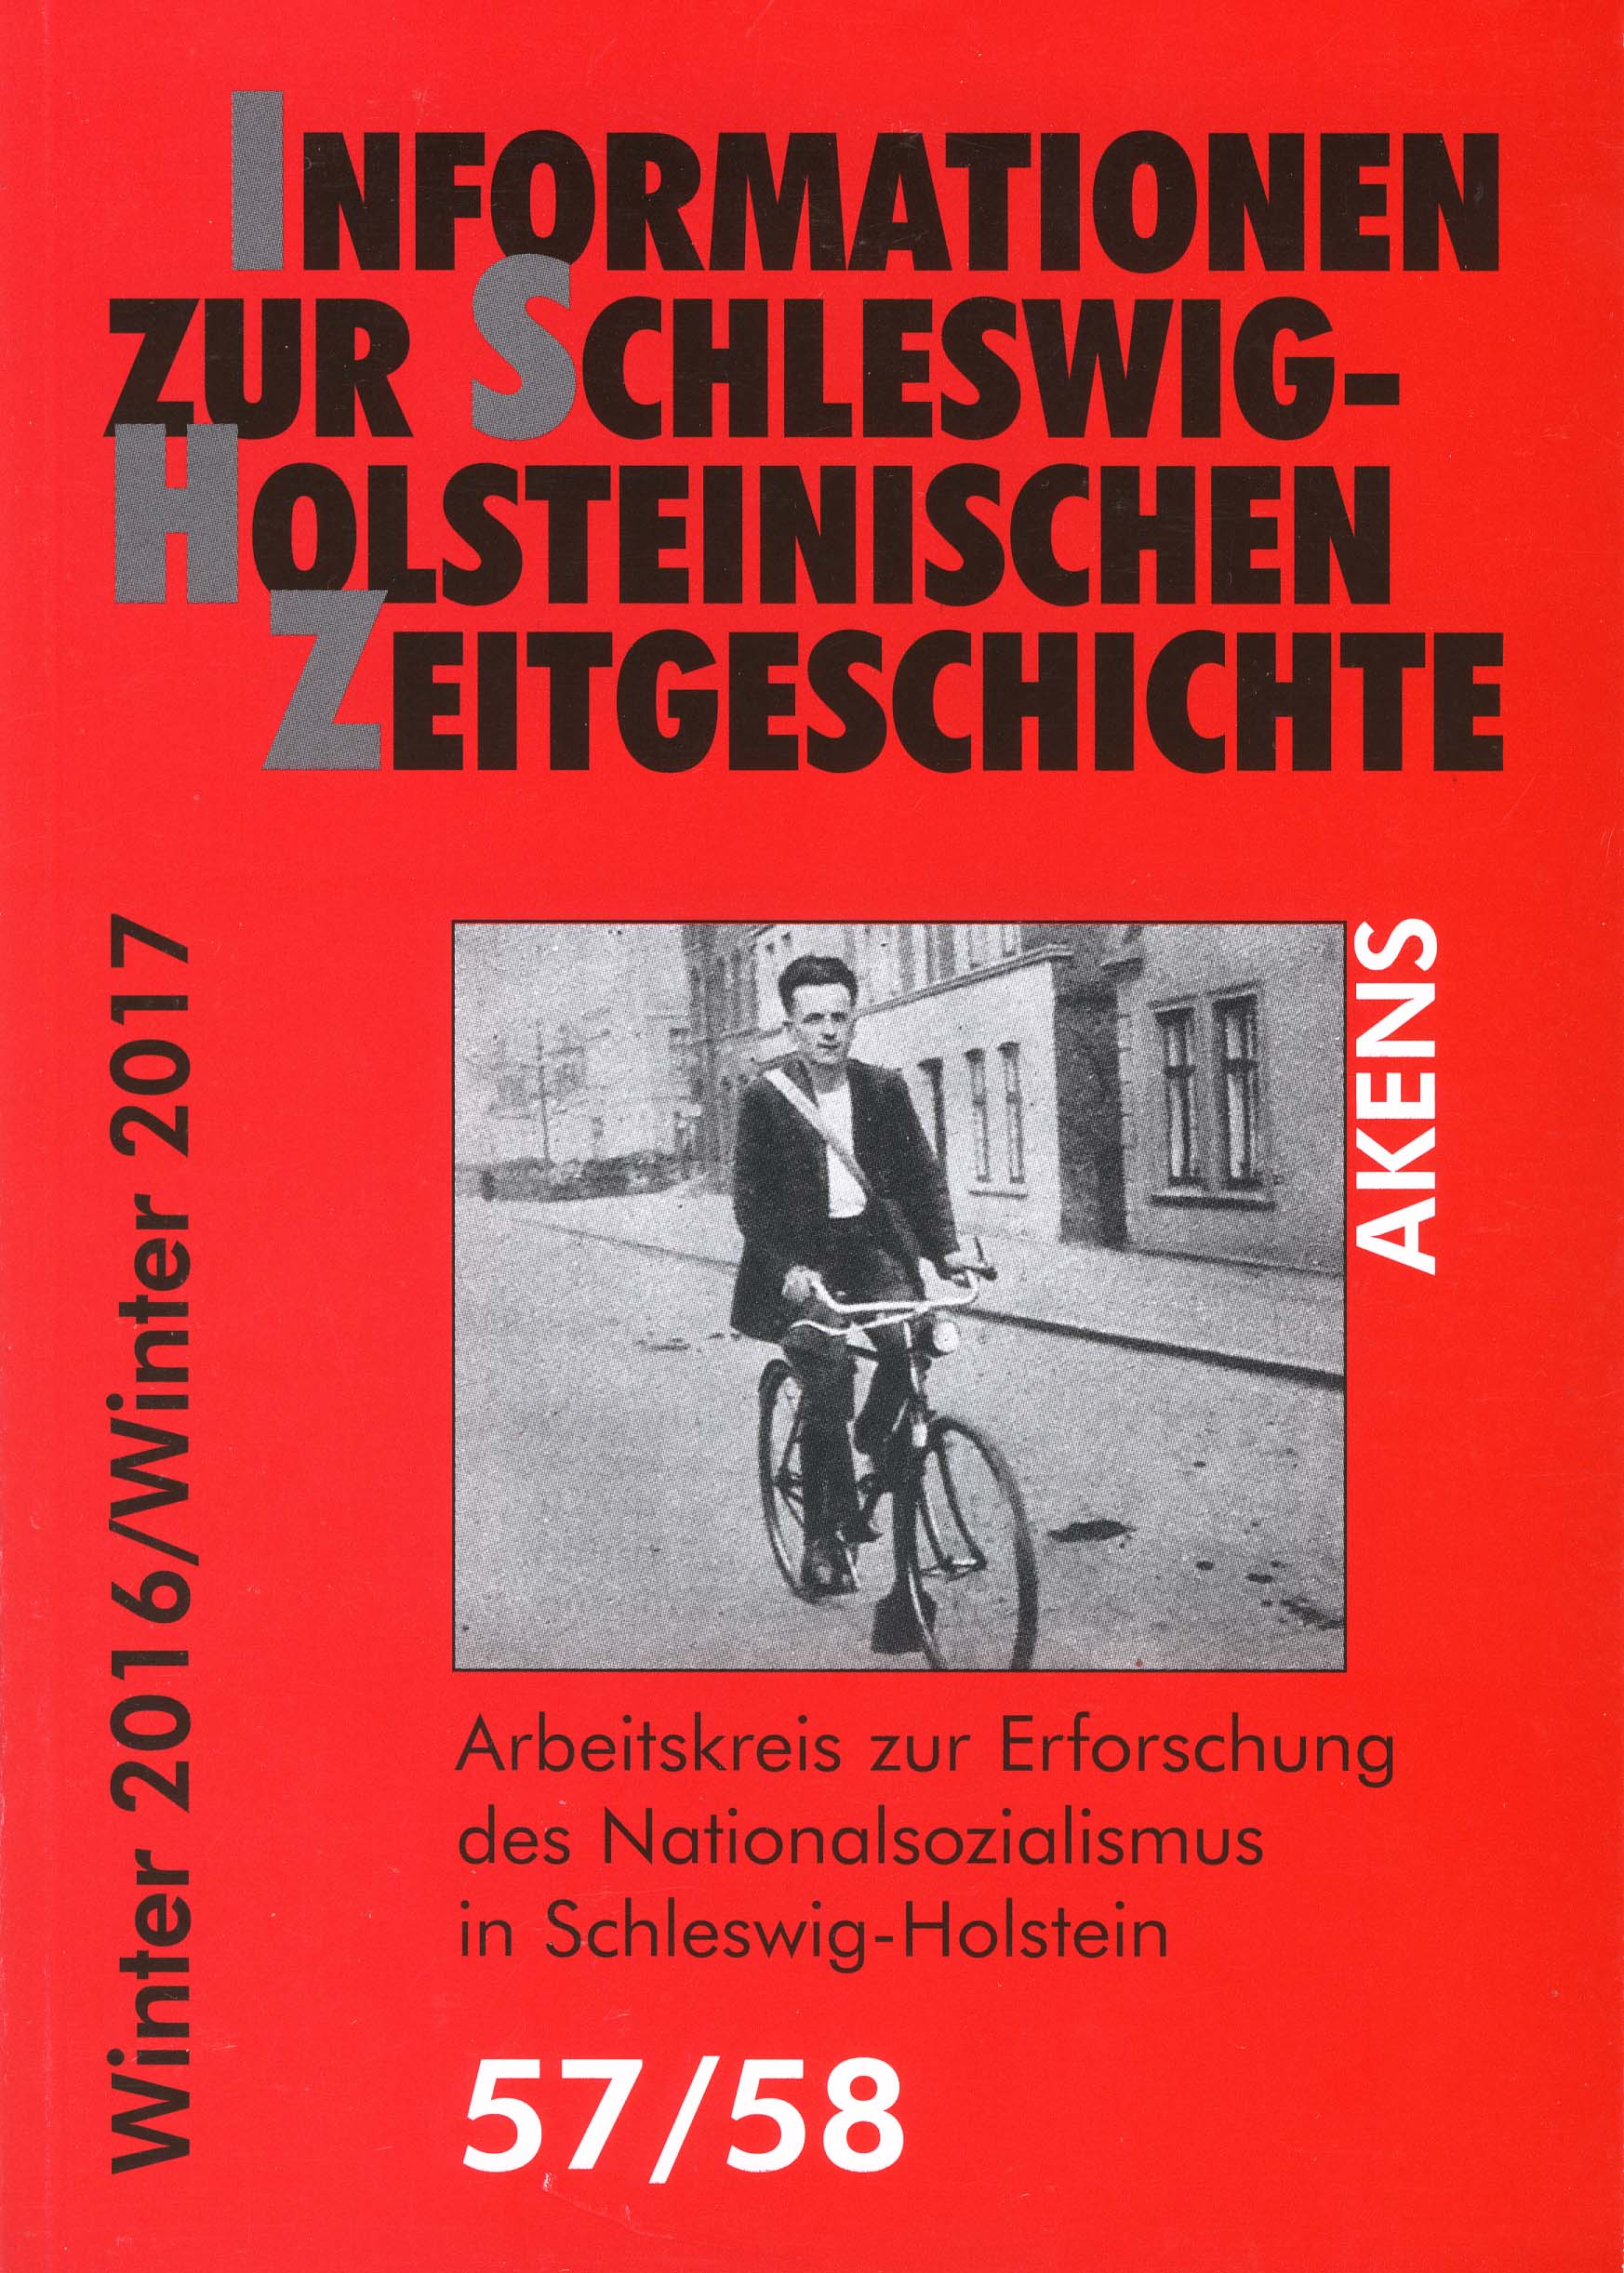 Titelbild der Zeitschrift: Ein Radfahrer fährt durch eine Straße. Adolf Bauer, Kommunist, Dithmarschen. Mordopfer der Nazis 1932.